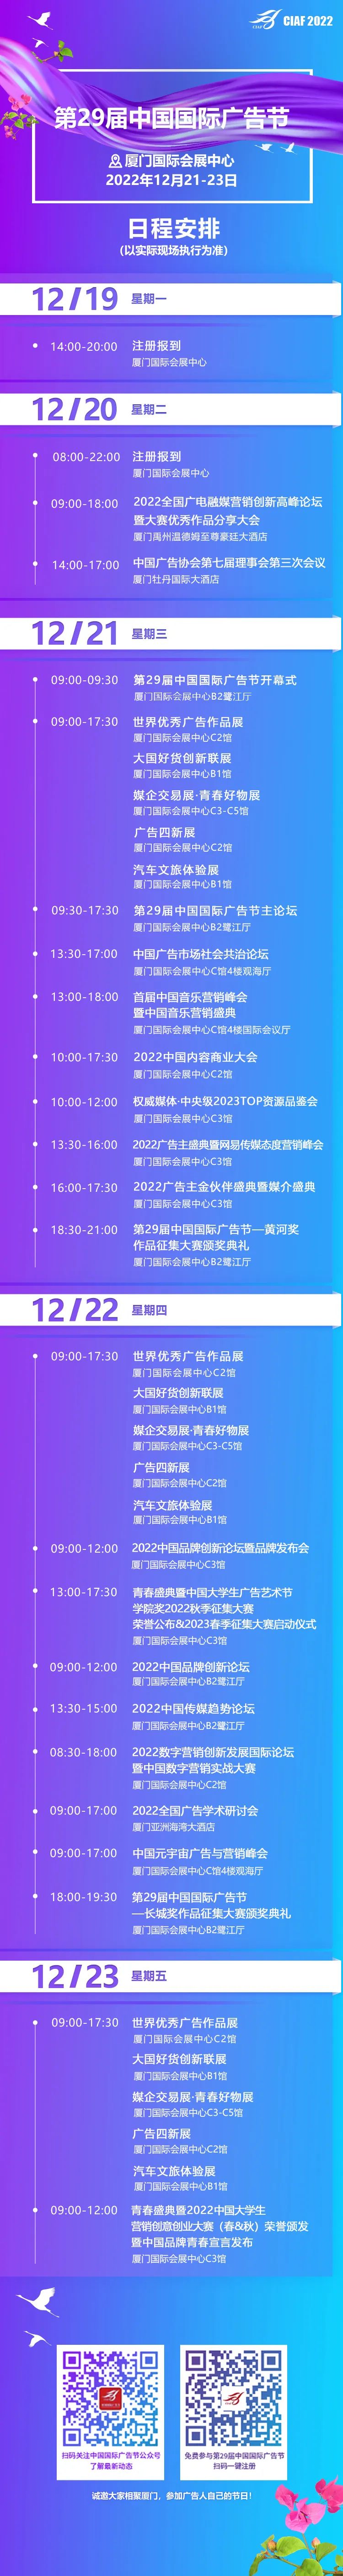 第29届中国国际广告节日程安排